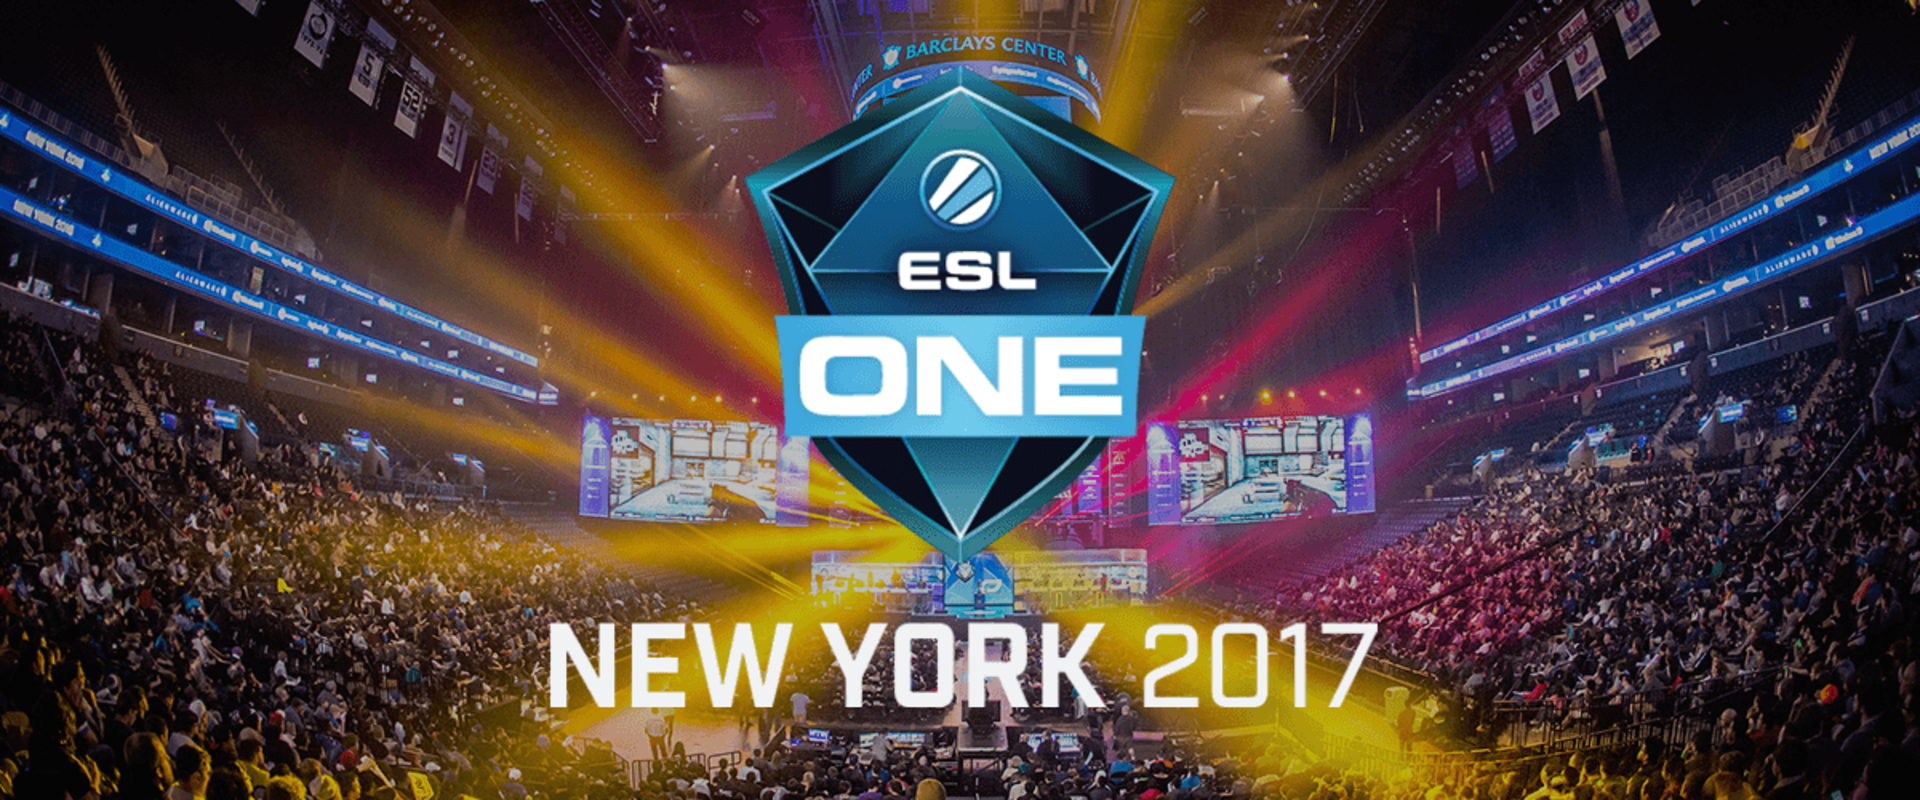 Az ESL ONE New York kvalifikációján debütál az új HR!